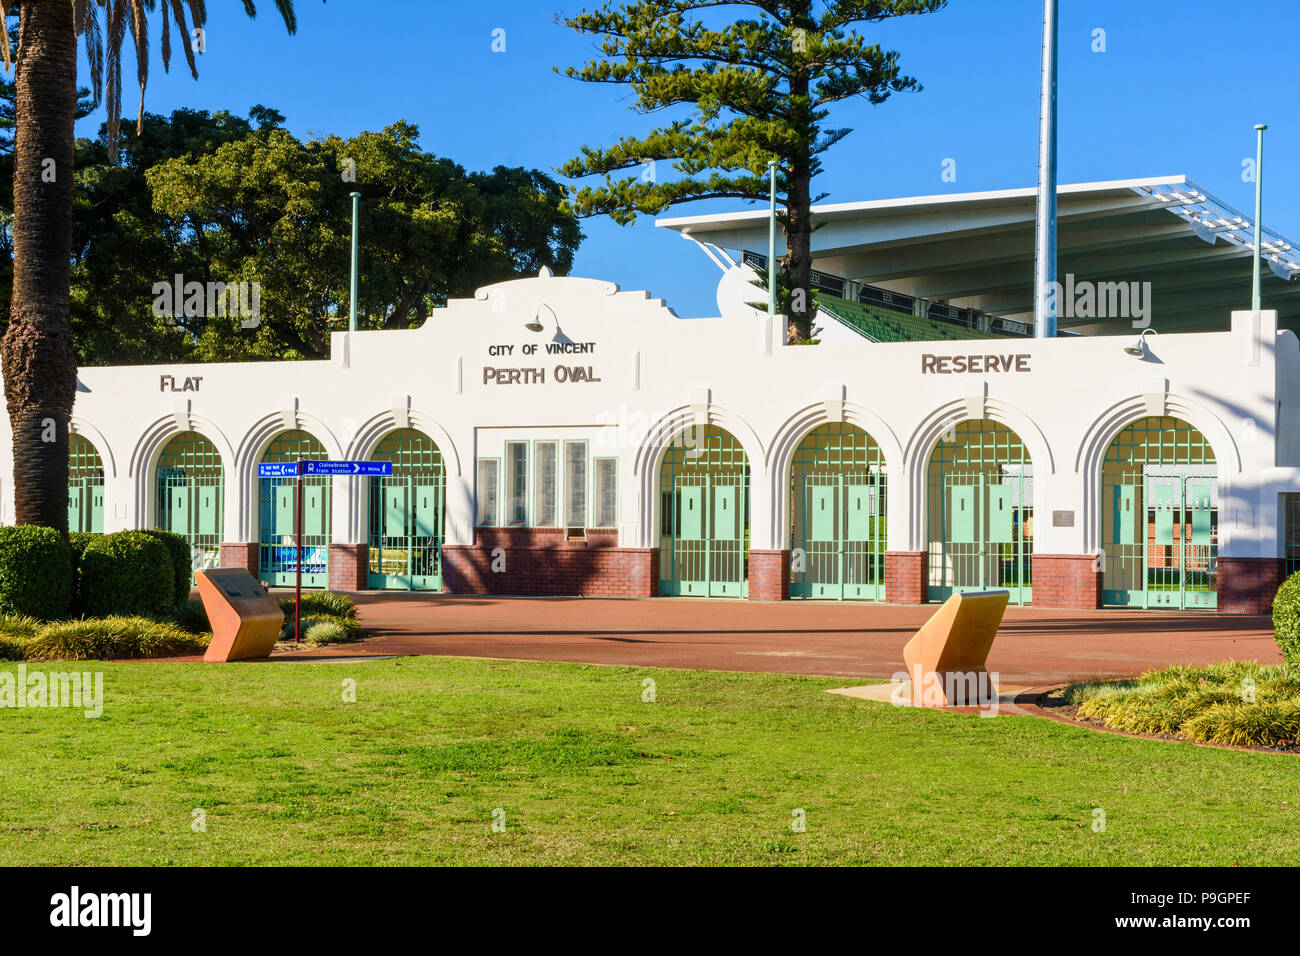 Weltkulturerbe Eingangstore nach Perth Oval, wie nib-Stadion, Perth, Western Australia bekannt Stockfoto